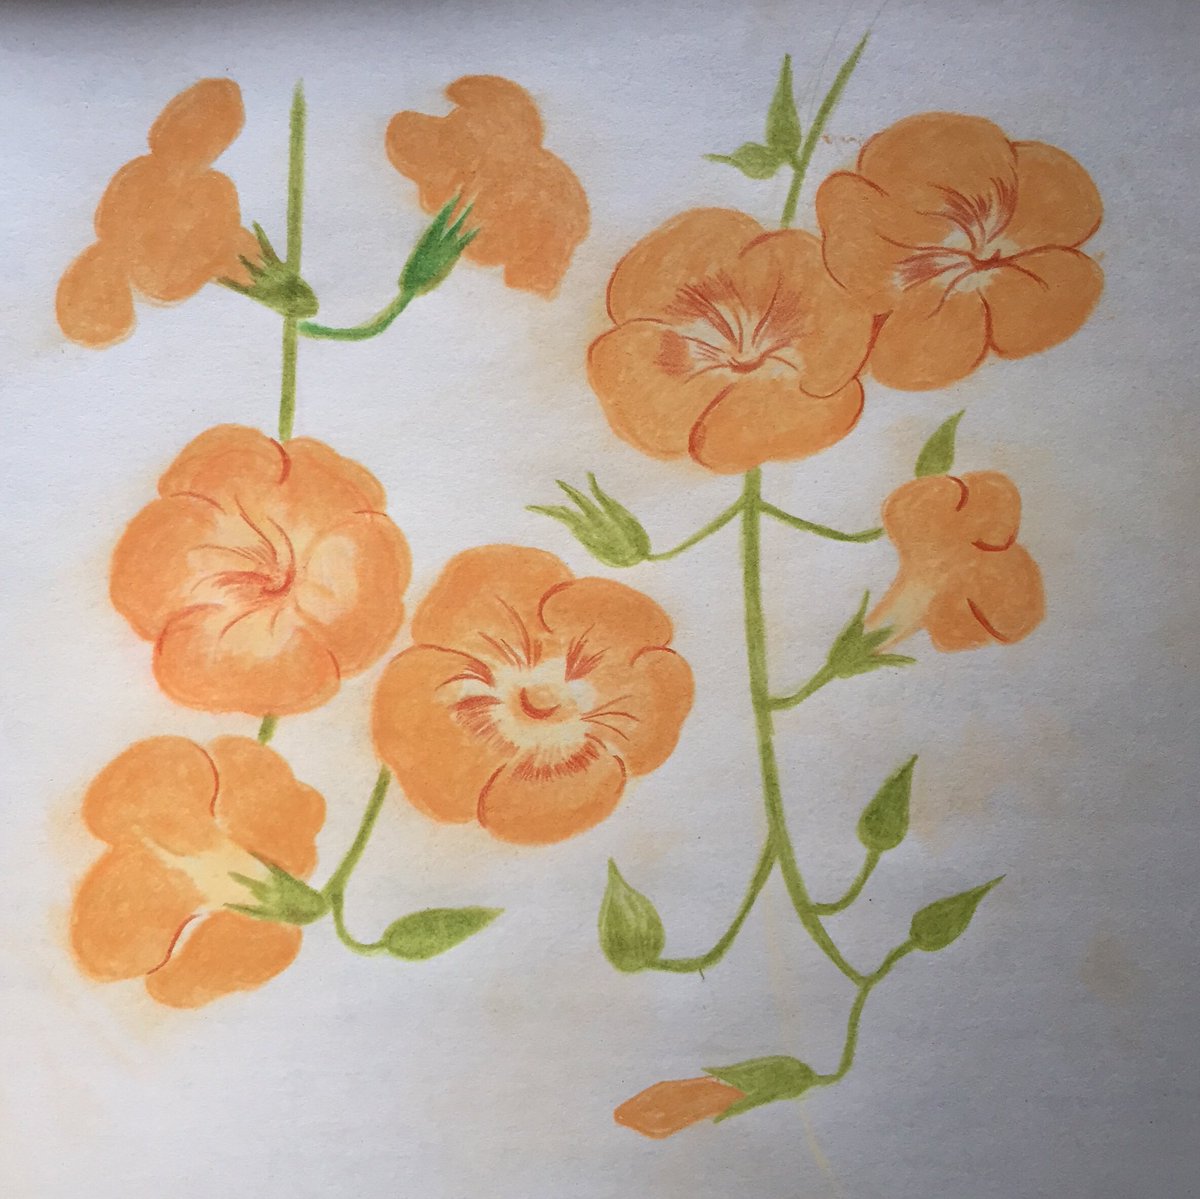 Koa オレンジ色の花が好き ノウゼンカズラ 花イラスト イラストレーション Illustration パステル画